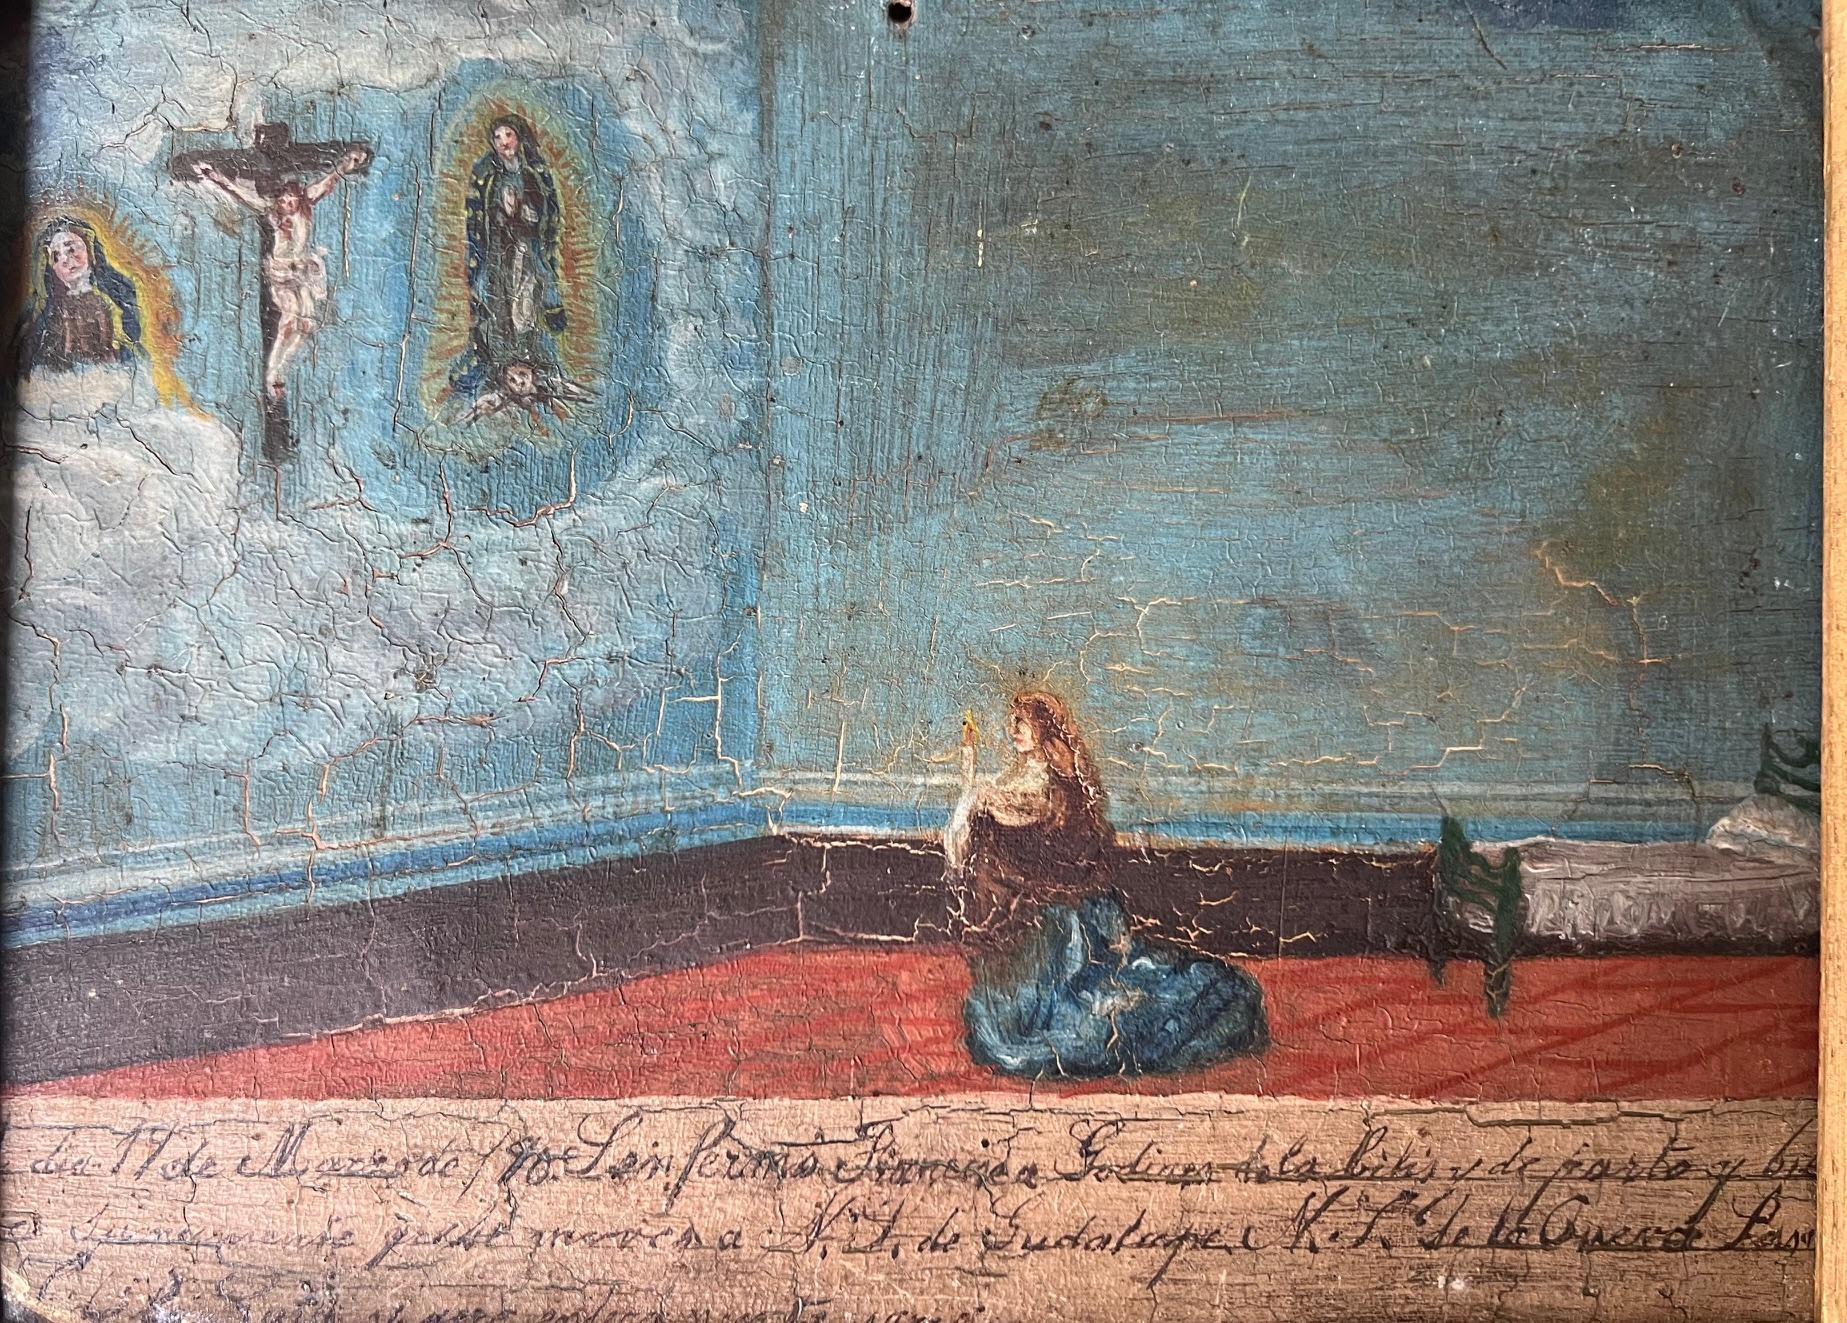 Antikes mexikanisches Retablo aus dem Jahr 1890 mit einer Frau, die zur Jungfrau Maria und zu Jesus Christus betet.

Gerahmt in einem kunstvoll geschnitzten und mit Gold bemalten Holzrahmen mit braunem Samtbezug.

Retablo misst ungefähr 7 x 10